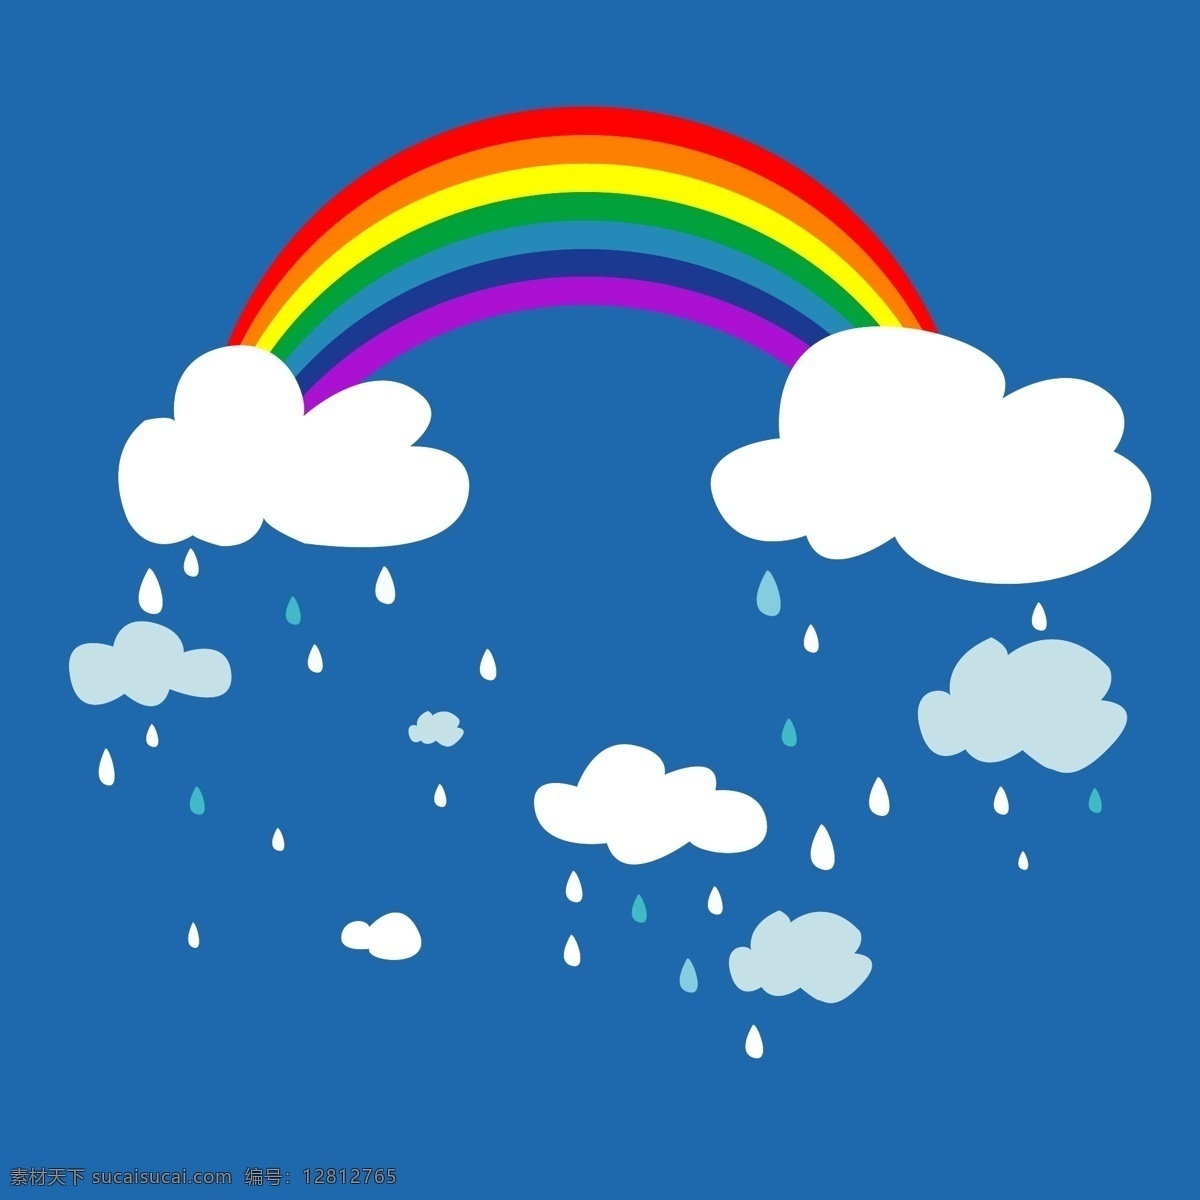 印花 矢量图 彩虹 服装图案 天空 印花矢量图 雨滴 云彩 面料图库 服装设计 图案花型